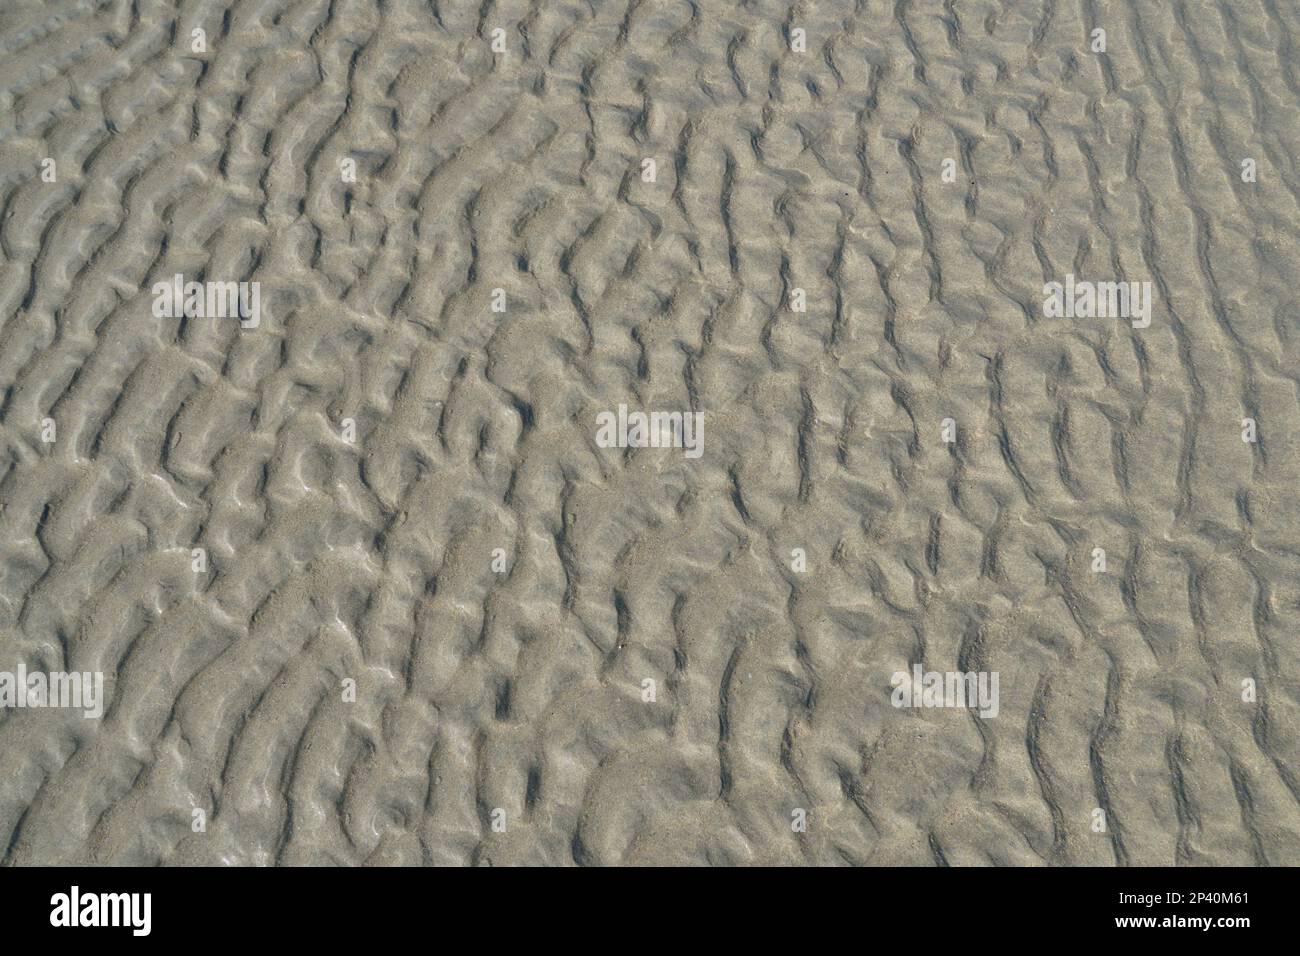 Texture de sable humide laissée par l'eau, scène naturelle abstraite sur une plage de sable, en Espagne Banque D'Images